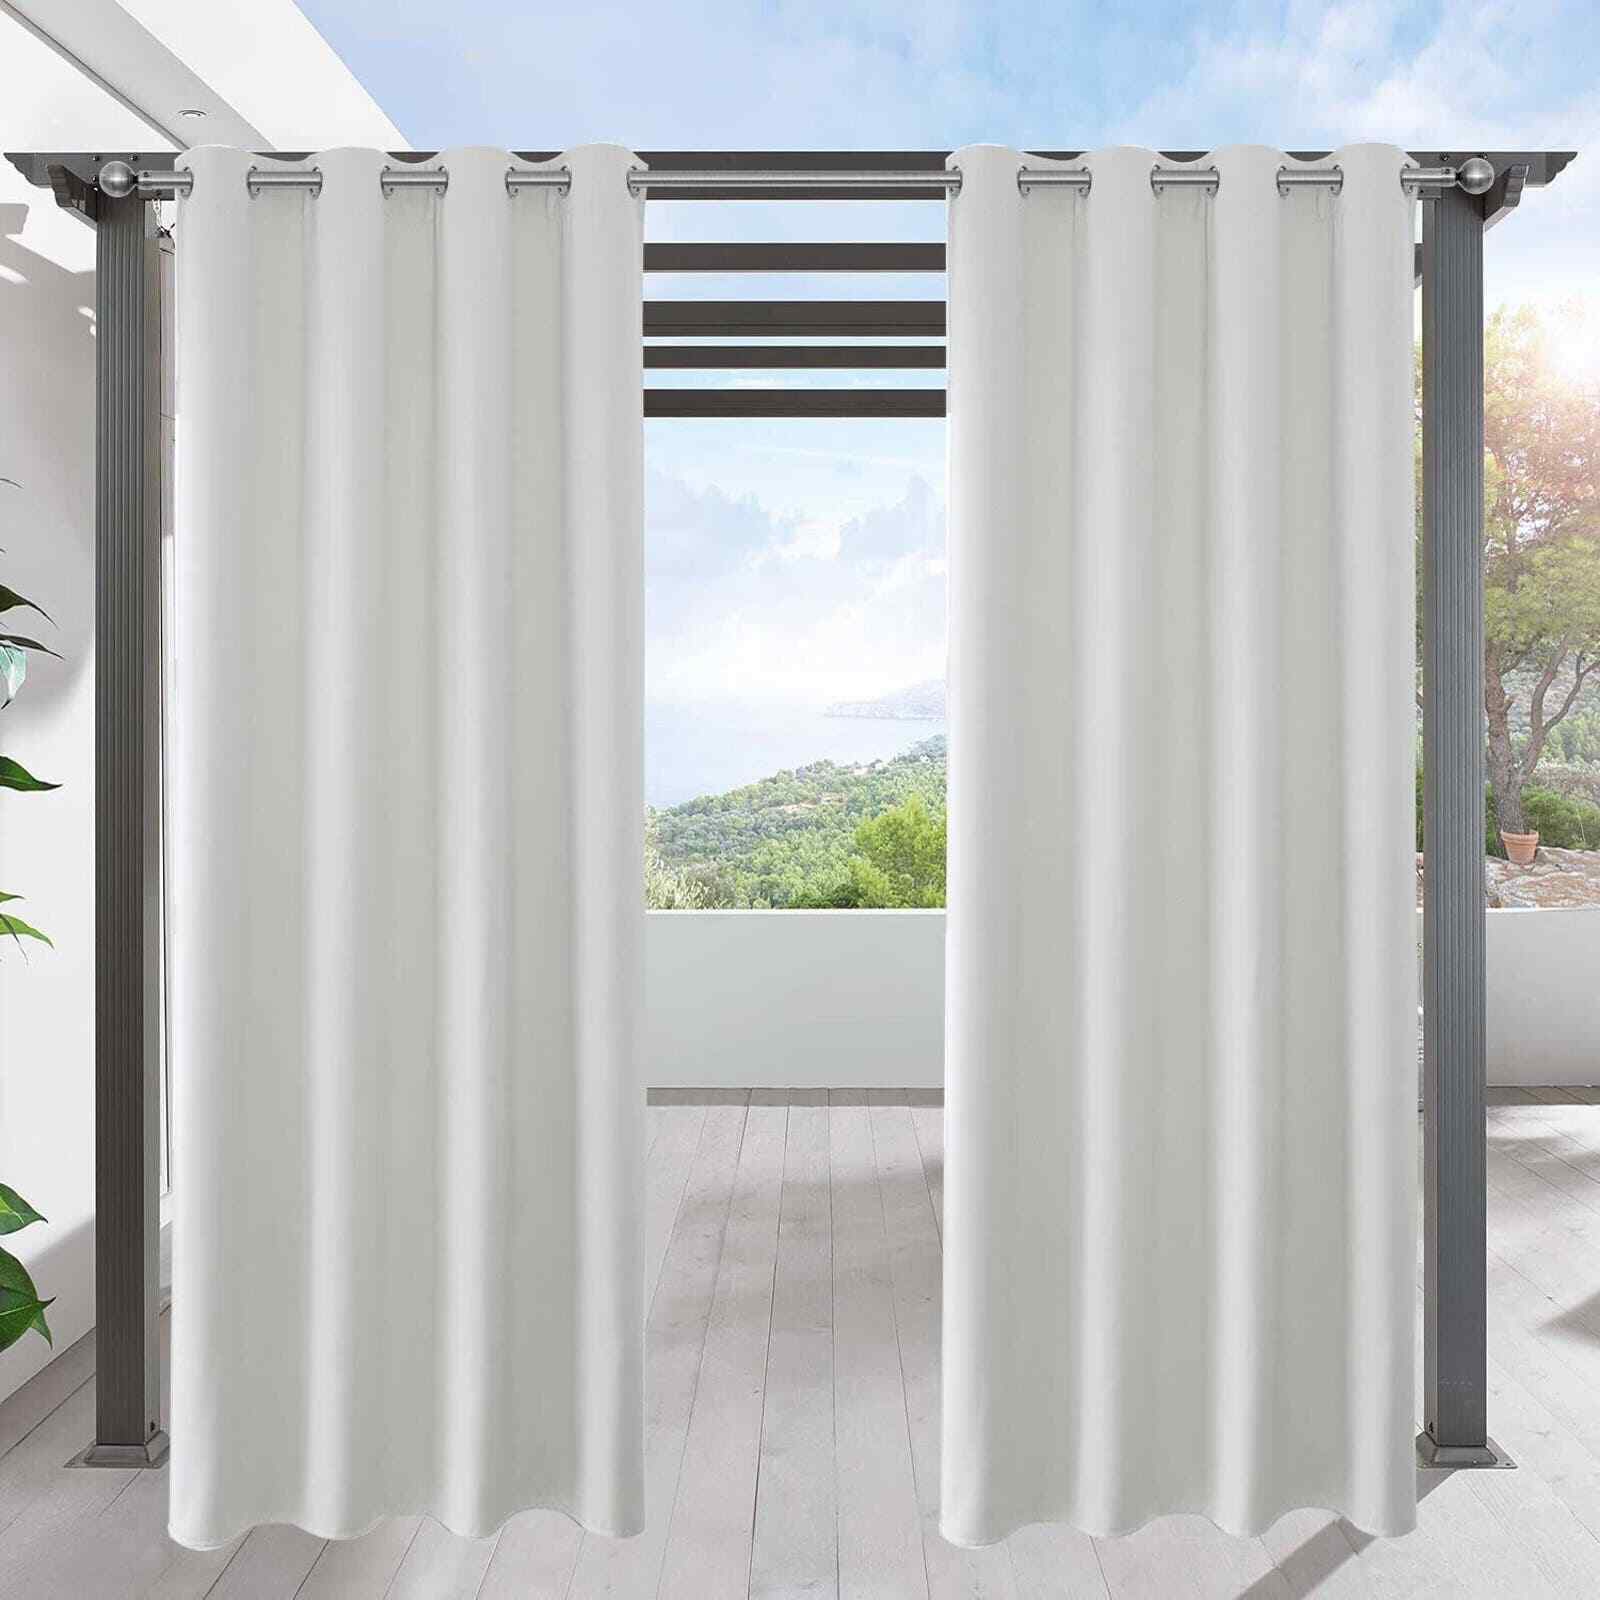 LIFONDER Patio Outdoor Curtain Sheers Panel Waterproof